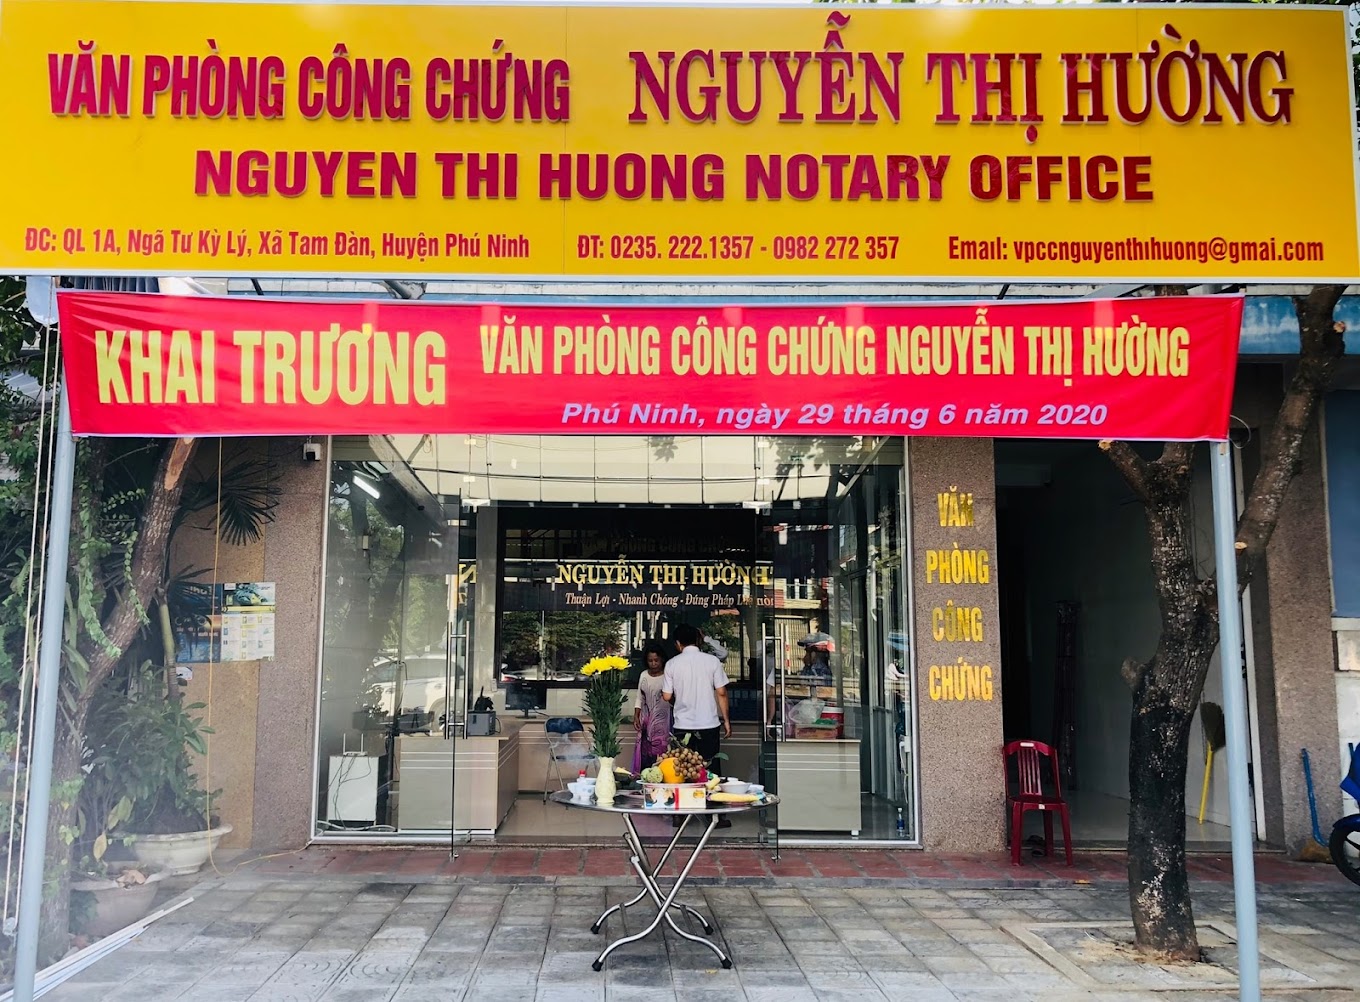 Liên hệ Văn phòng công chứng Nguyễn Thị Hường thông tin địa chỉ số điện thoại